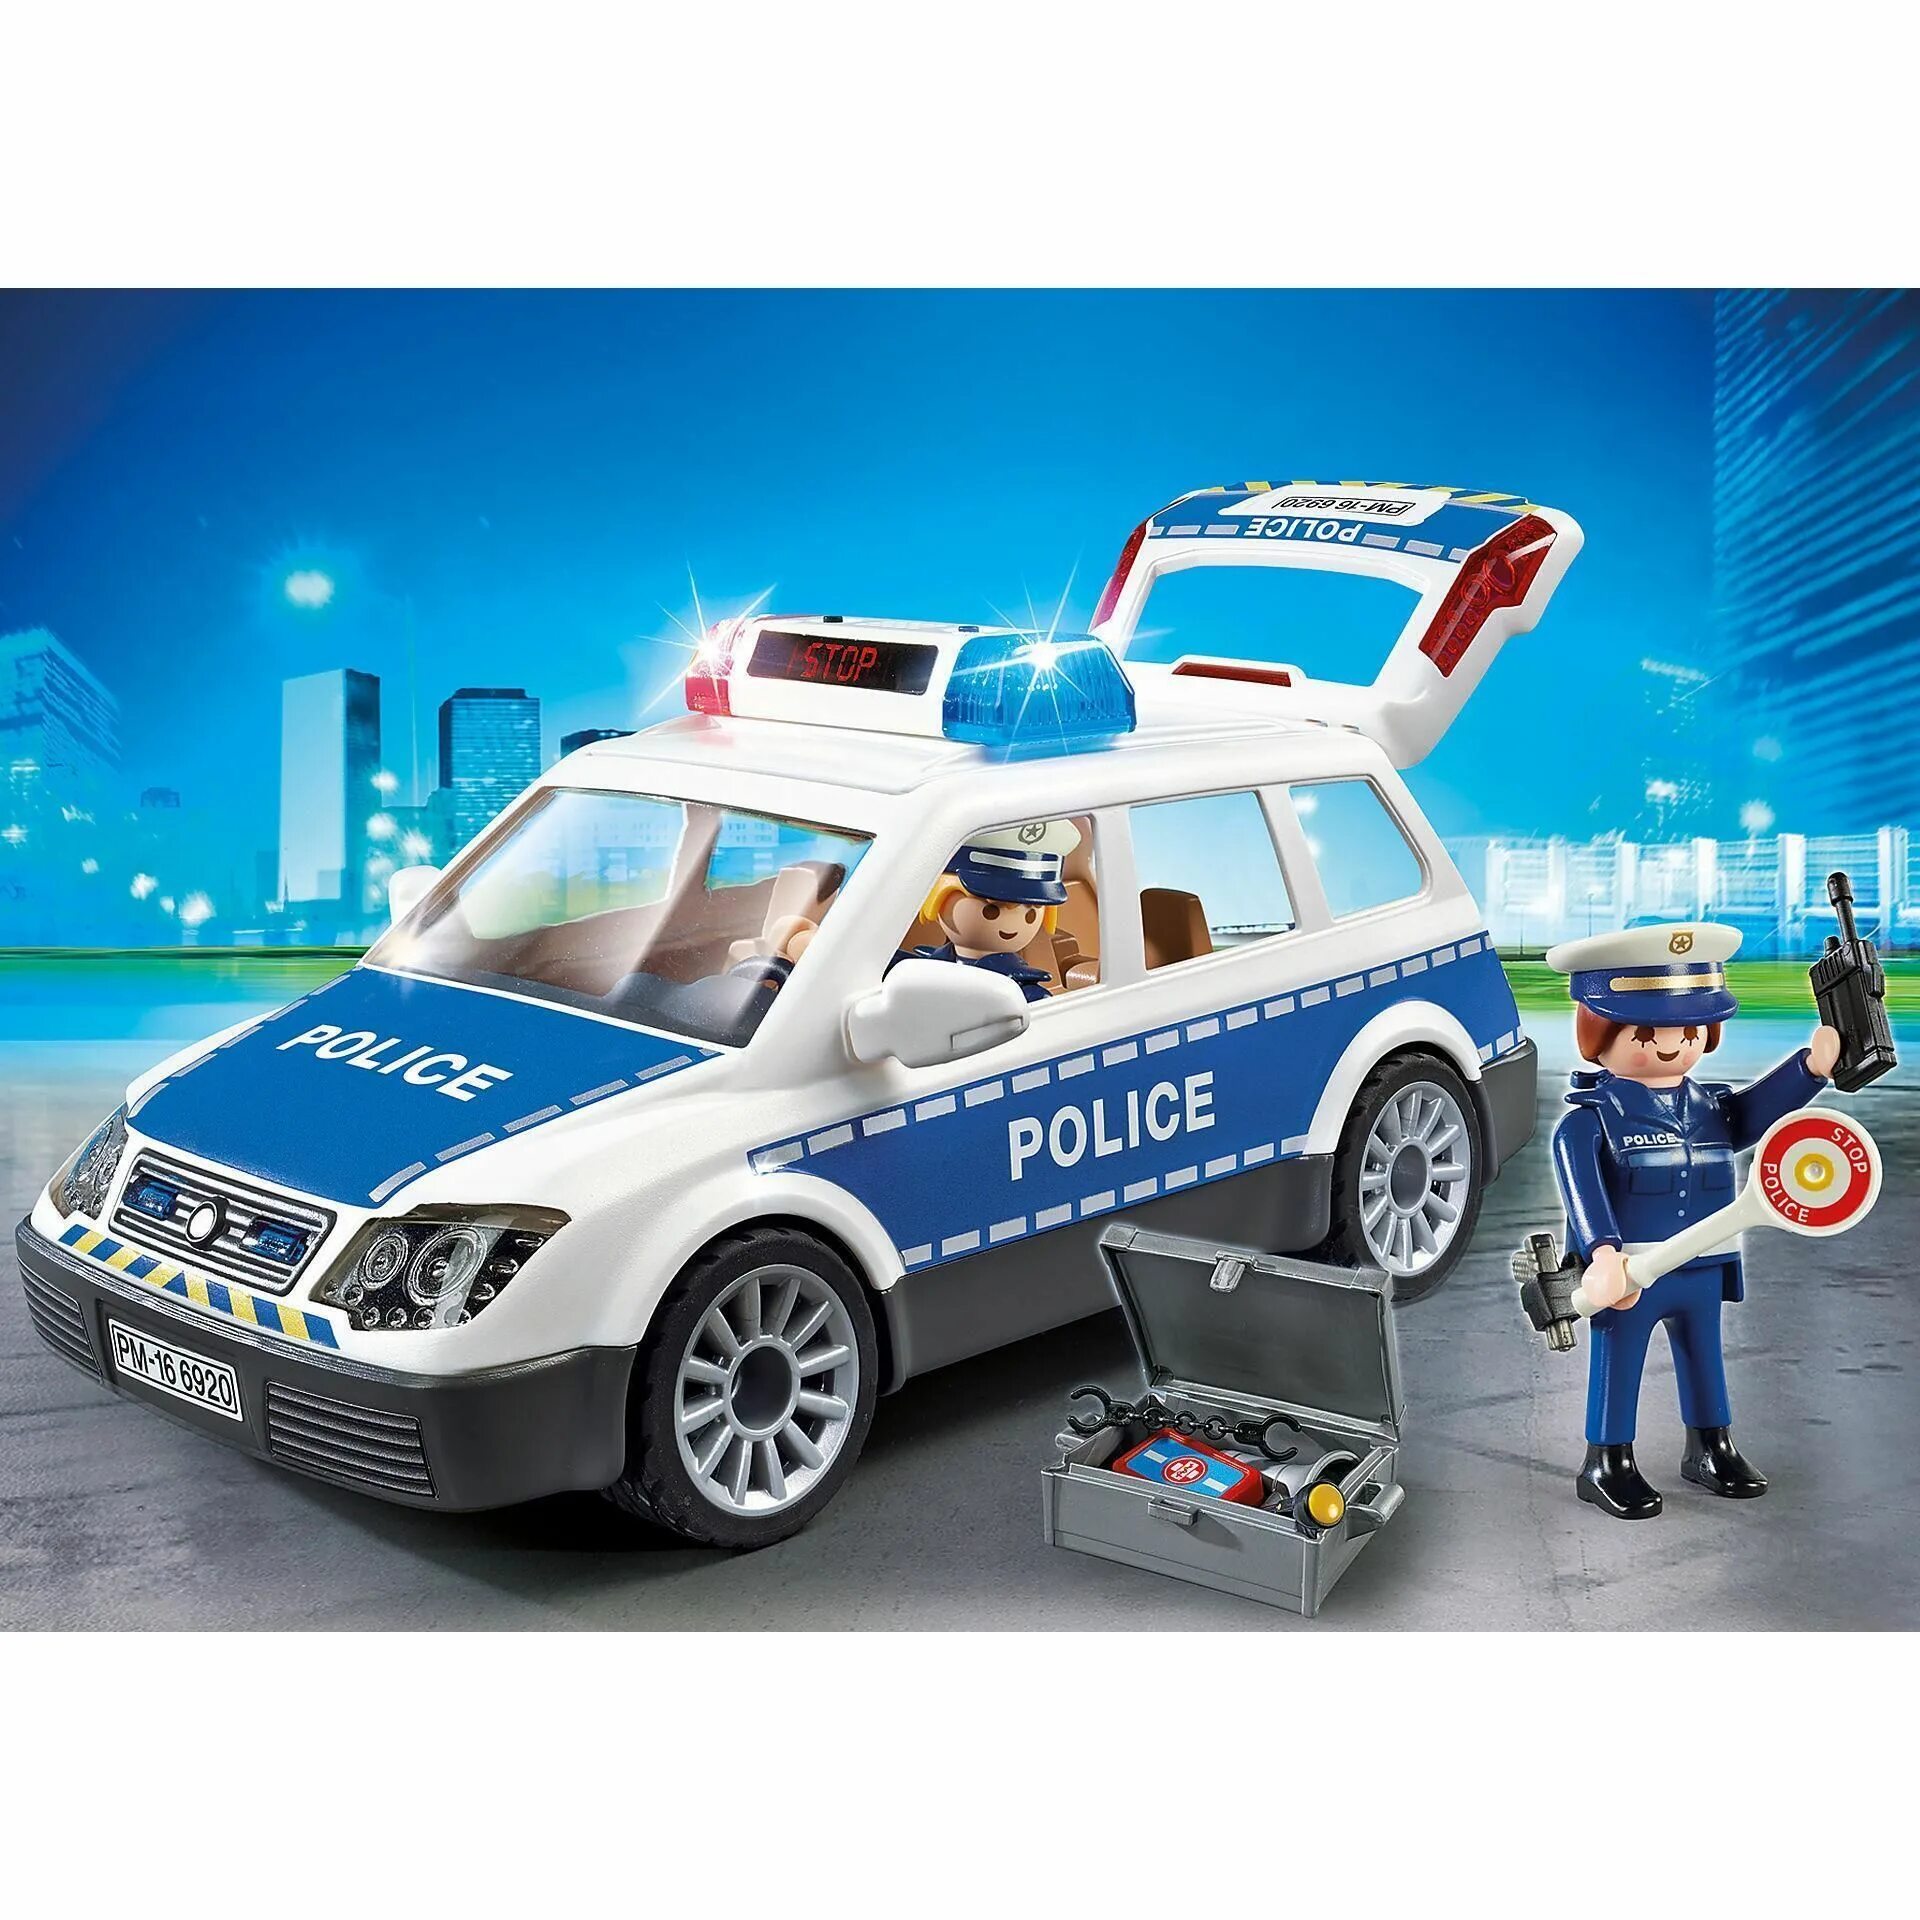 Полицейская машина Playmobil 6920. Playmobil Полицейская машина 9236. Playmobil полиция 6920. Playmobil Polizei машинка полиция. Про полицейскую машину для мальчиков